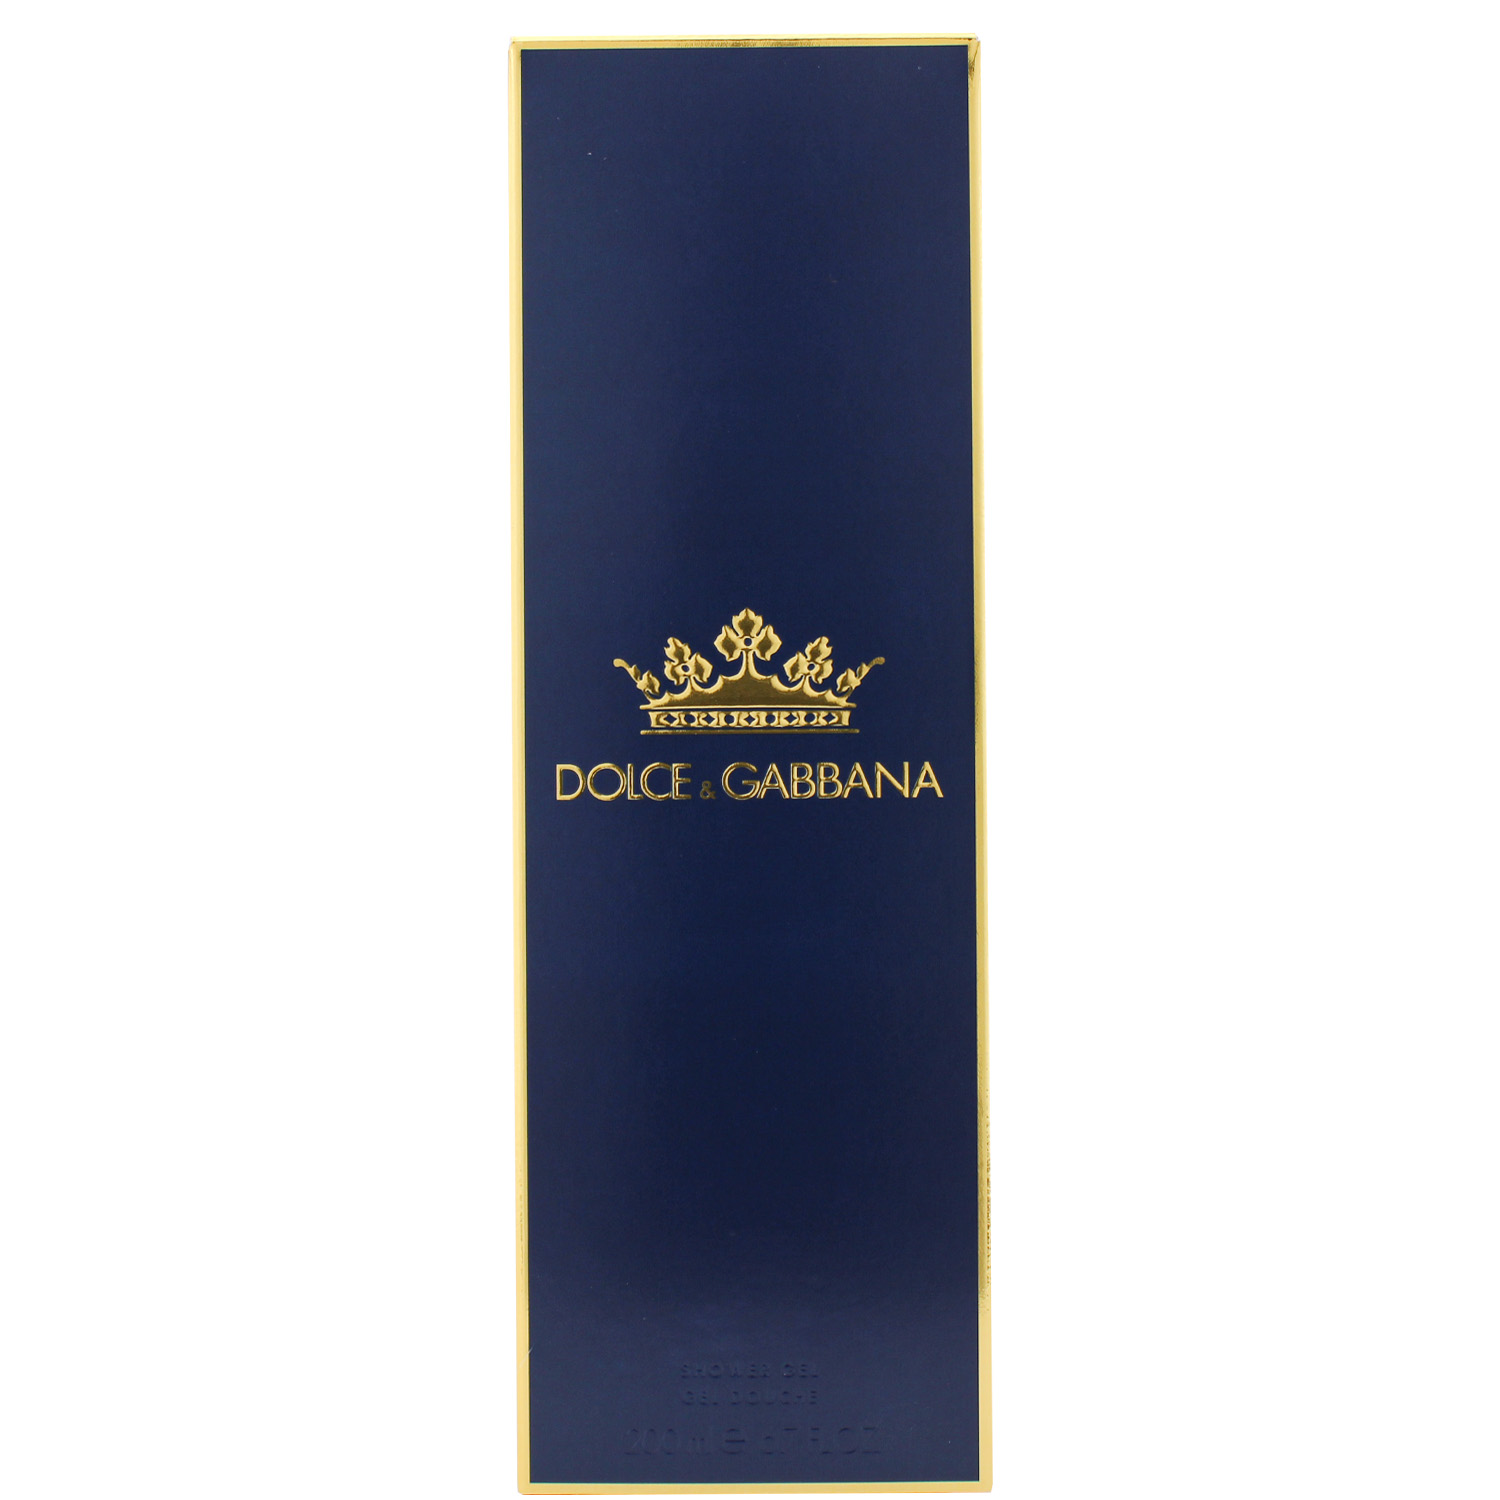 Dolce & Gabbana K by Dolce & Gabbana Shower Gel 200ml